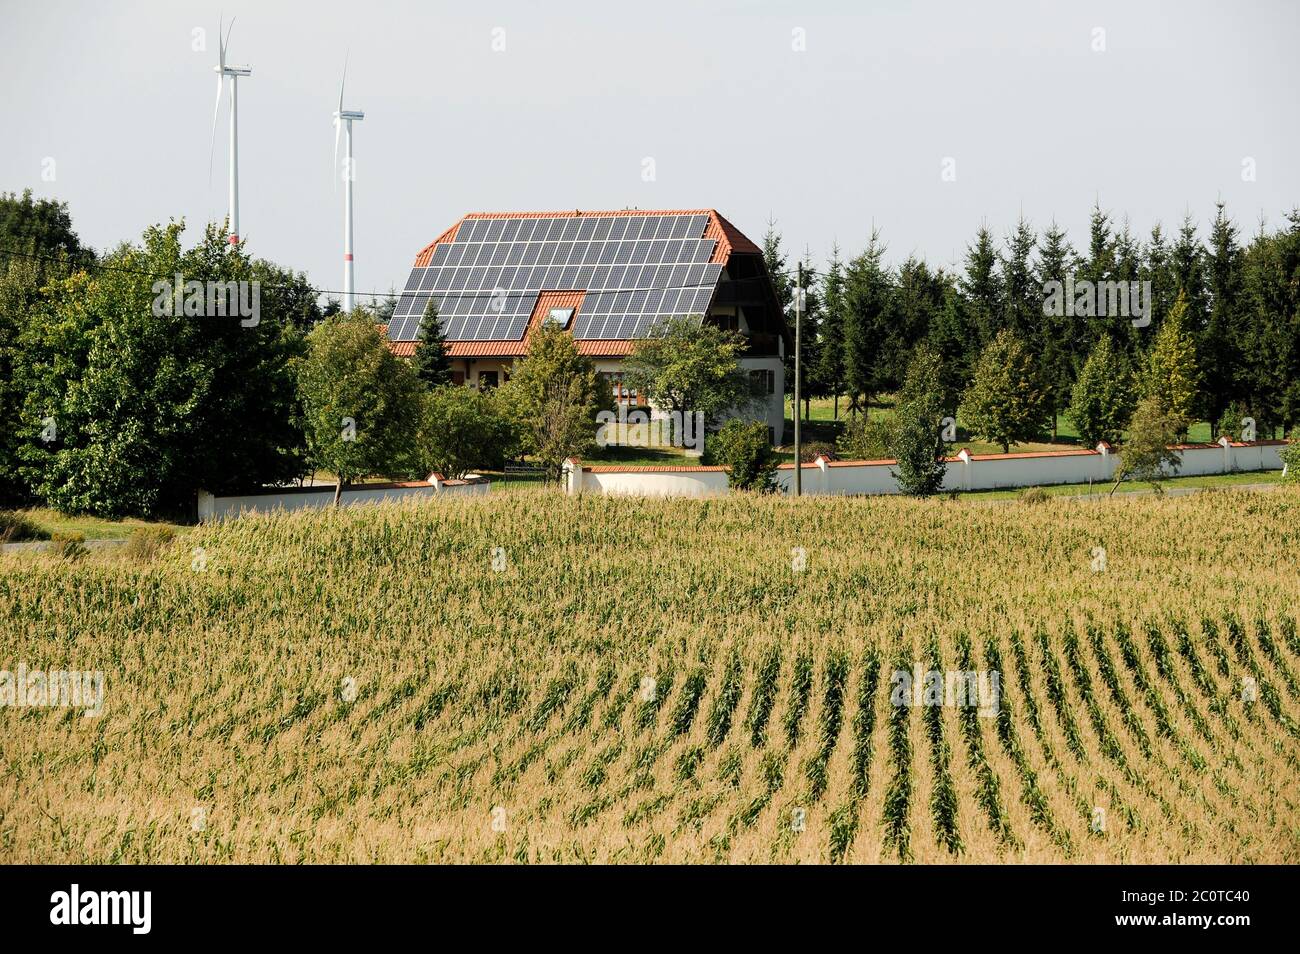 GERMANIA, mix energetico, transizione energetica, villaggio con energia eolica, casa con pannello solare, campo di mais, mais è utilizzato in impianti di biogas Foto Stock